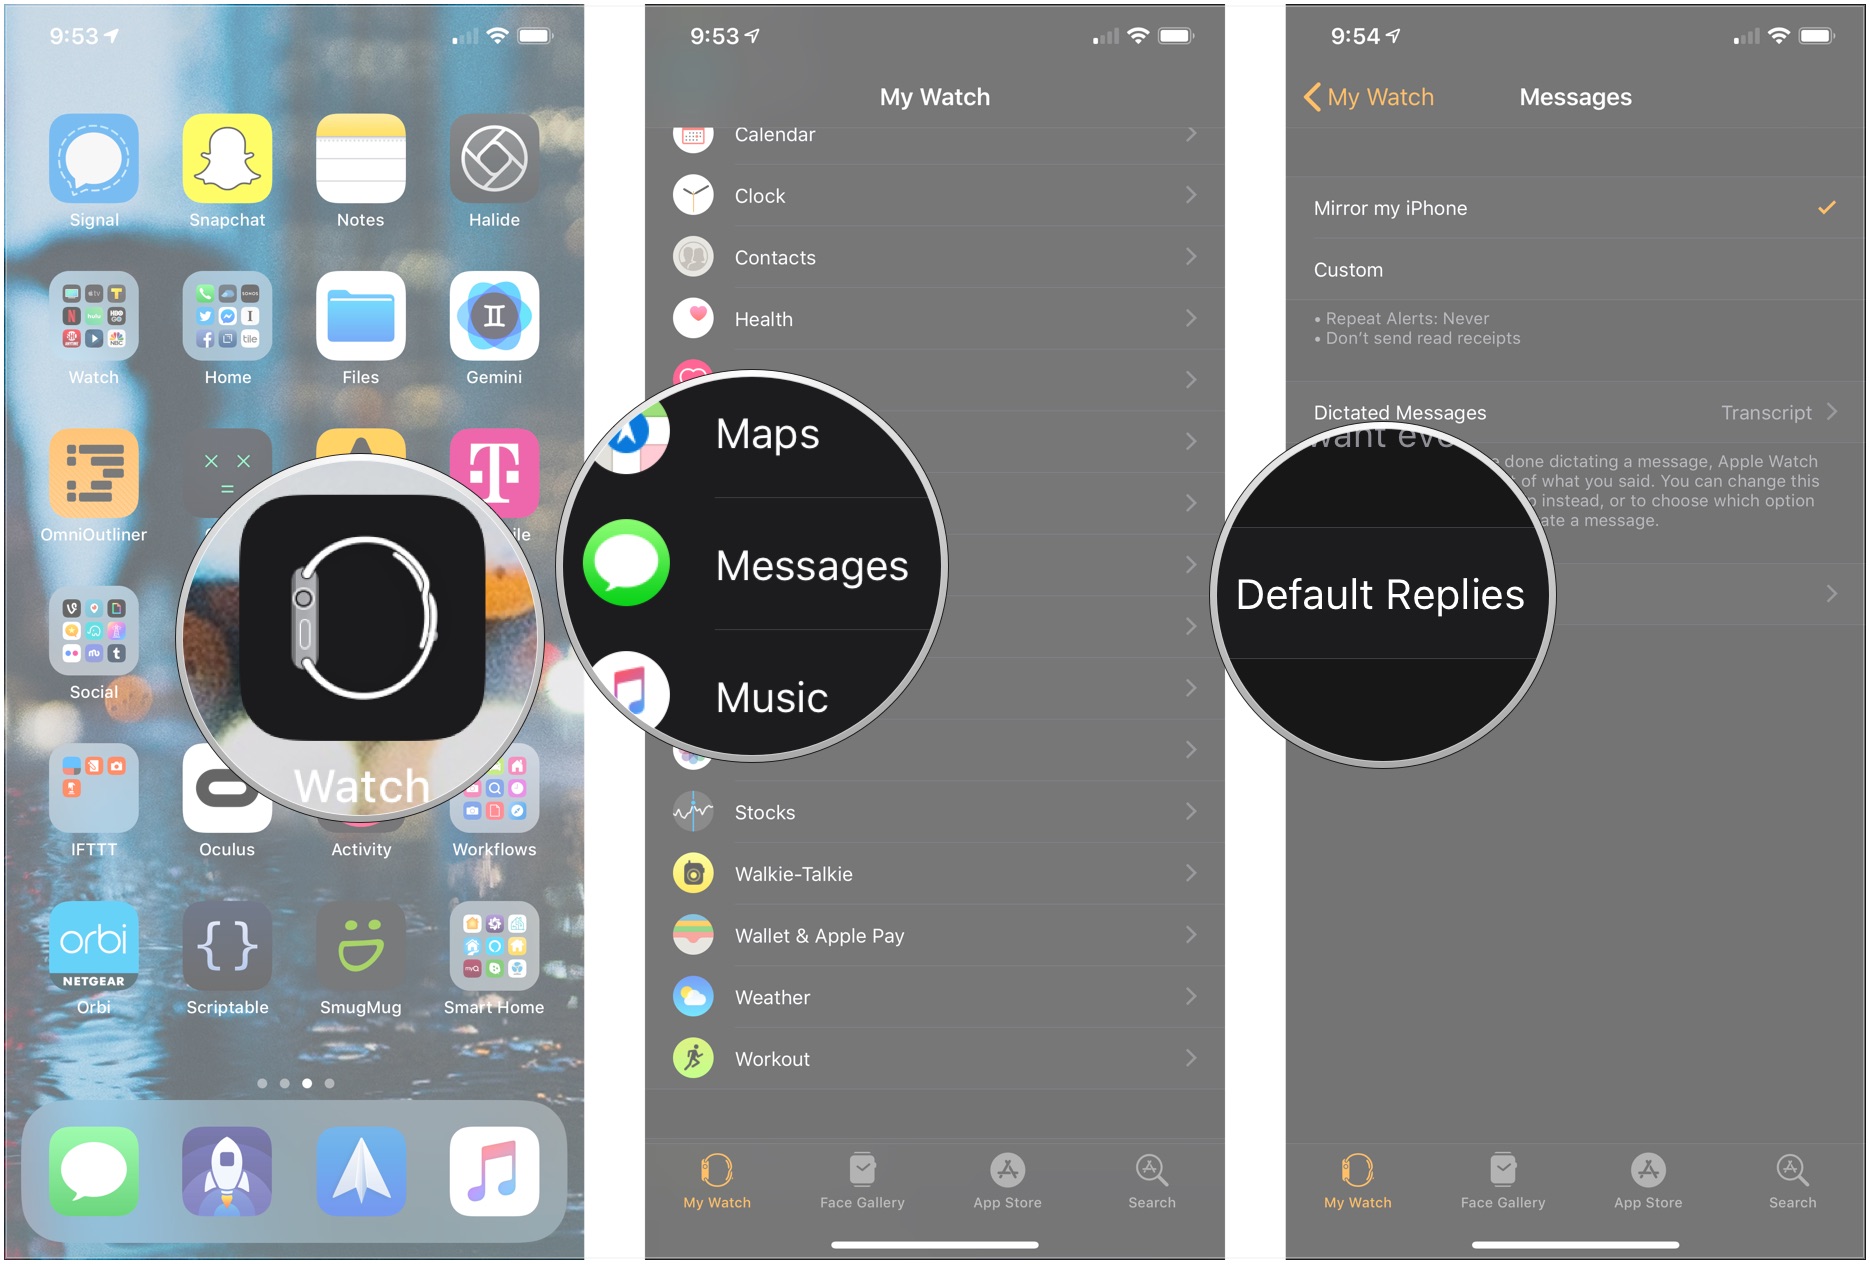 Open Apple Watch app, tap Messages, tap Default replies